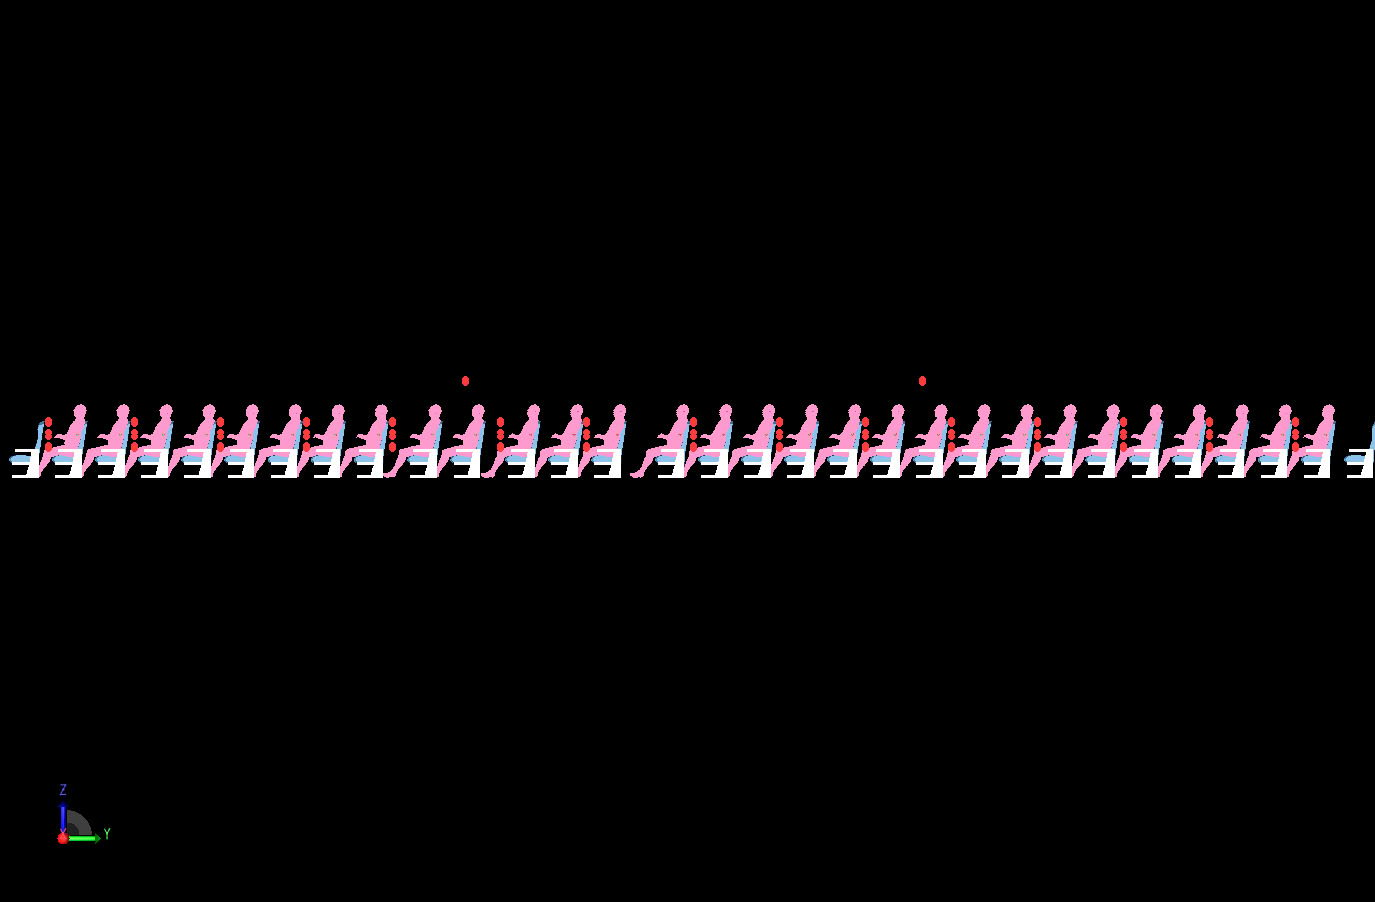 Abbildung 6In dieser Seitenansicht sind die Männer in den Sitzen dargestellt, und die Sensorarrays, die zur Erfassung der S-Parameterdaten verwendet werden, sind als rote Ovale dargestellt. Die beiden Sendeantennen befinden sich in der Höhe der Decke.